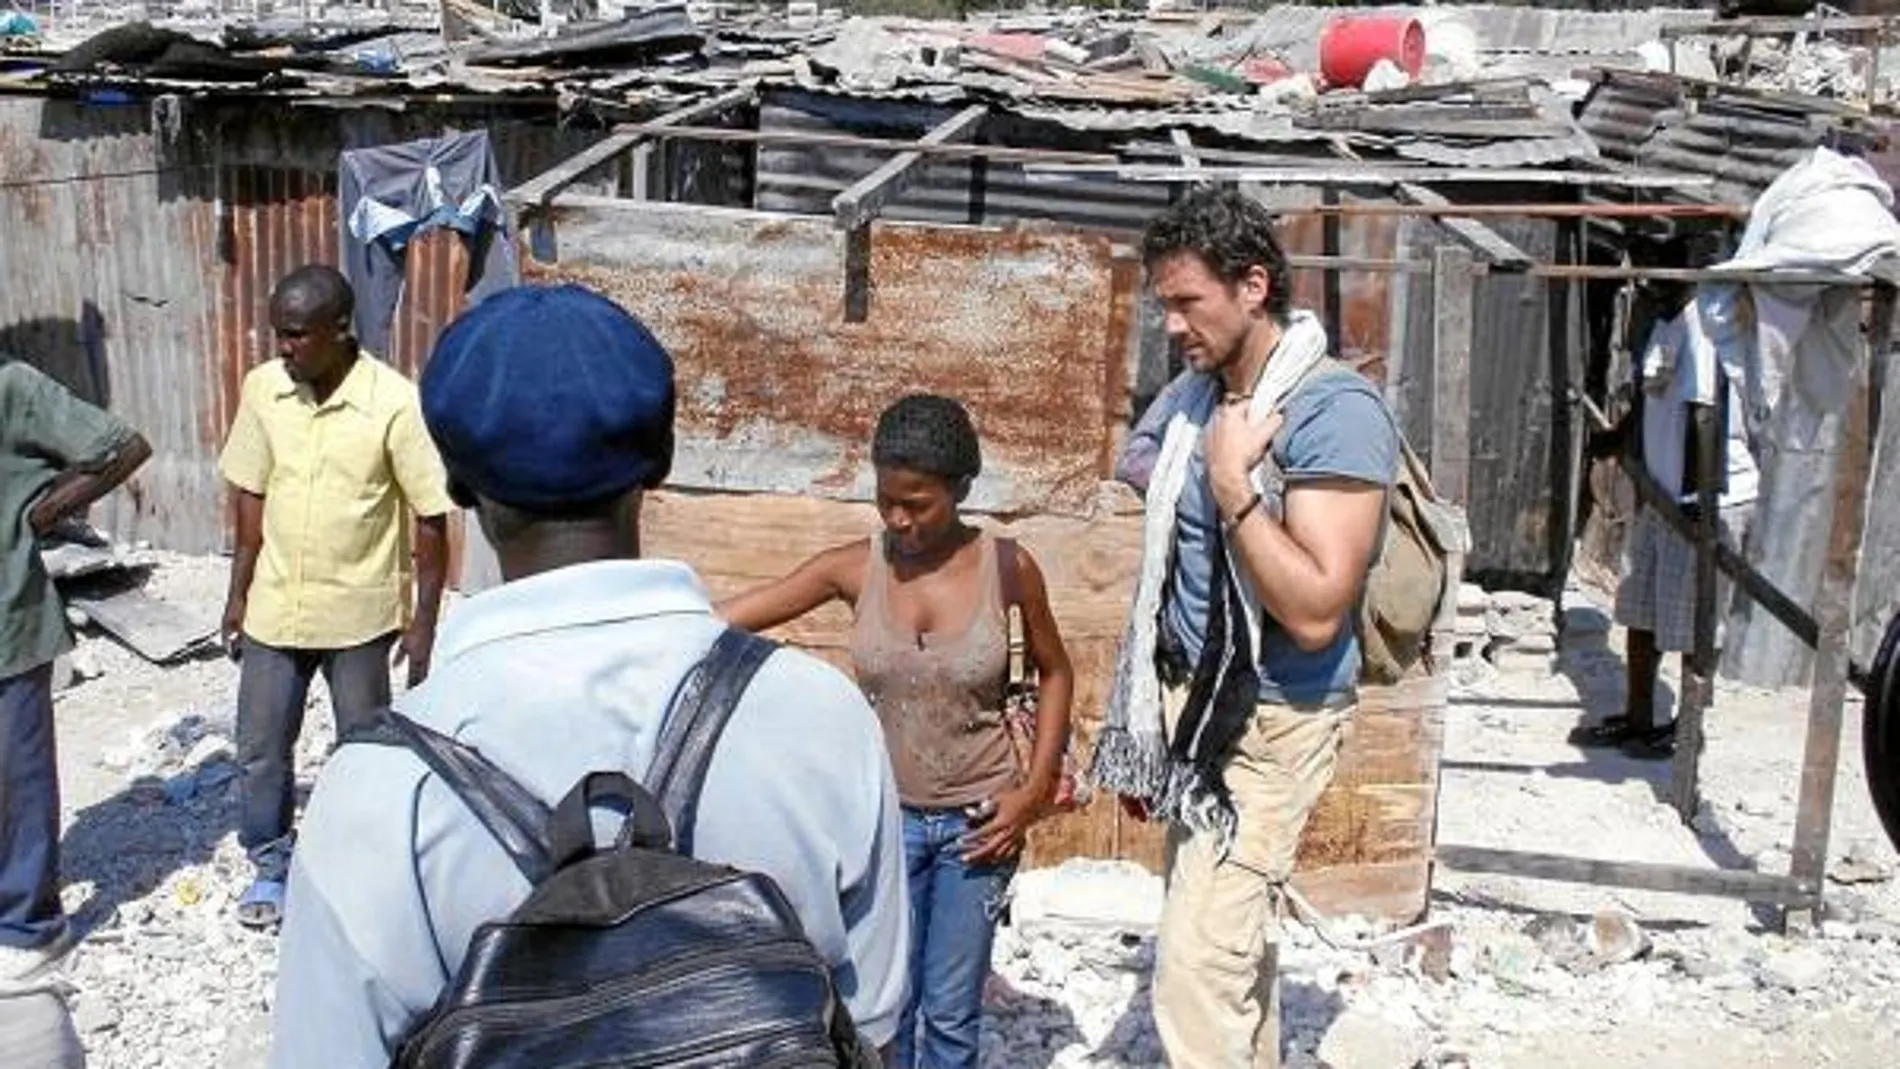 Miguel Ángel Tobías, director del documental, conversa con un grupo de haitianos